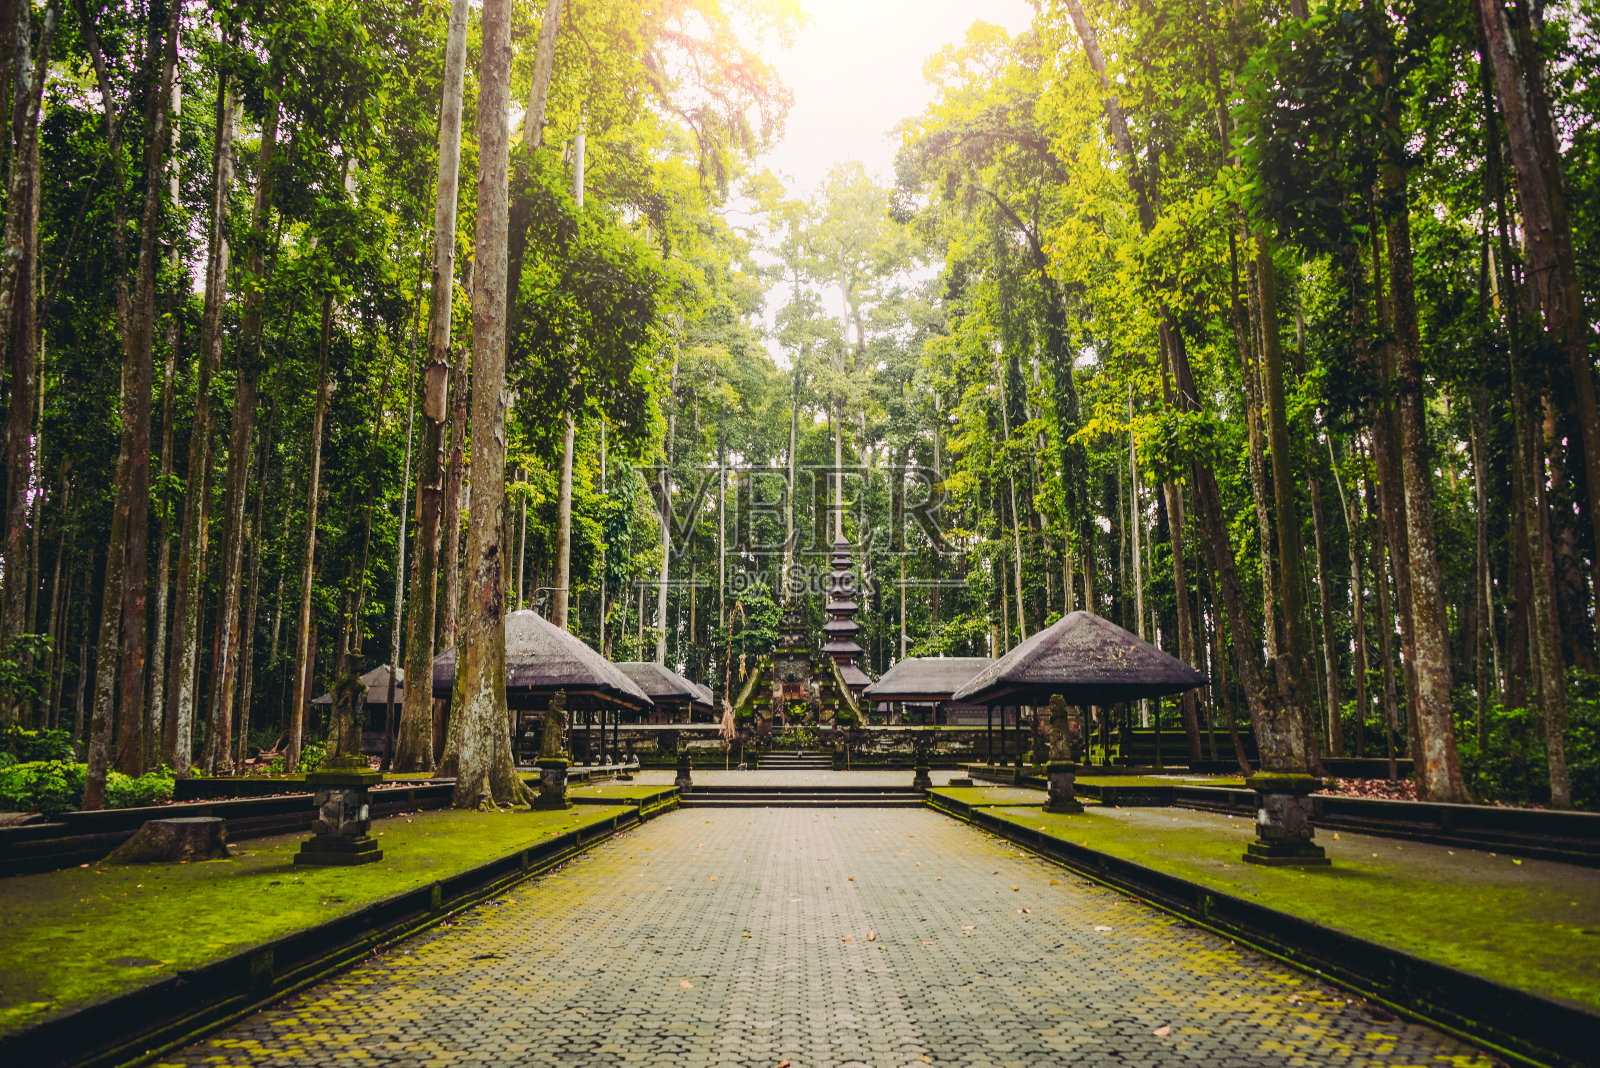 印度尼西亚巴厘岛乌布的圣猴森林保护区照片摄影图片